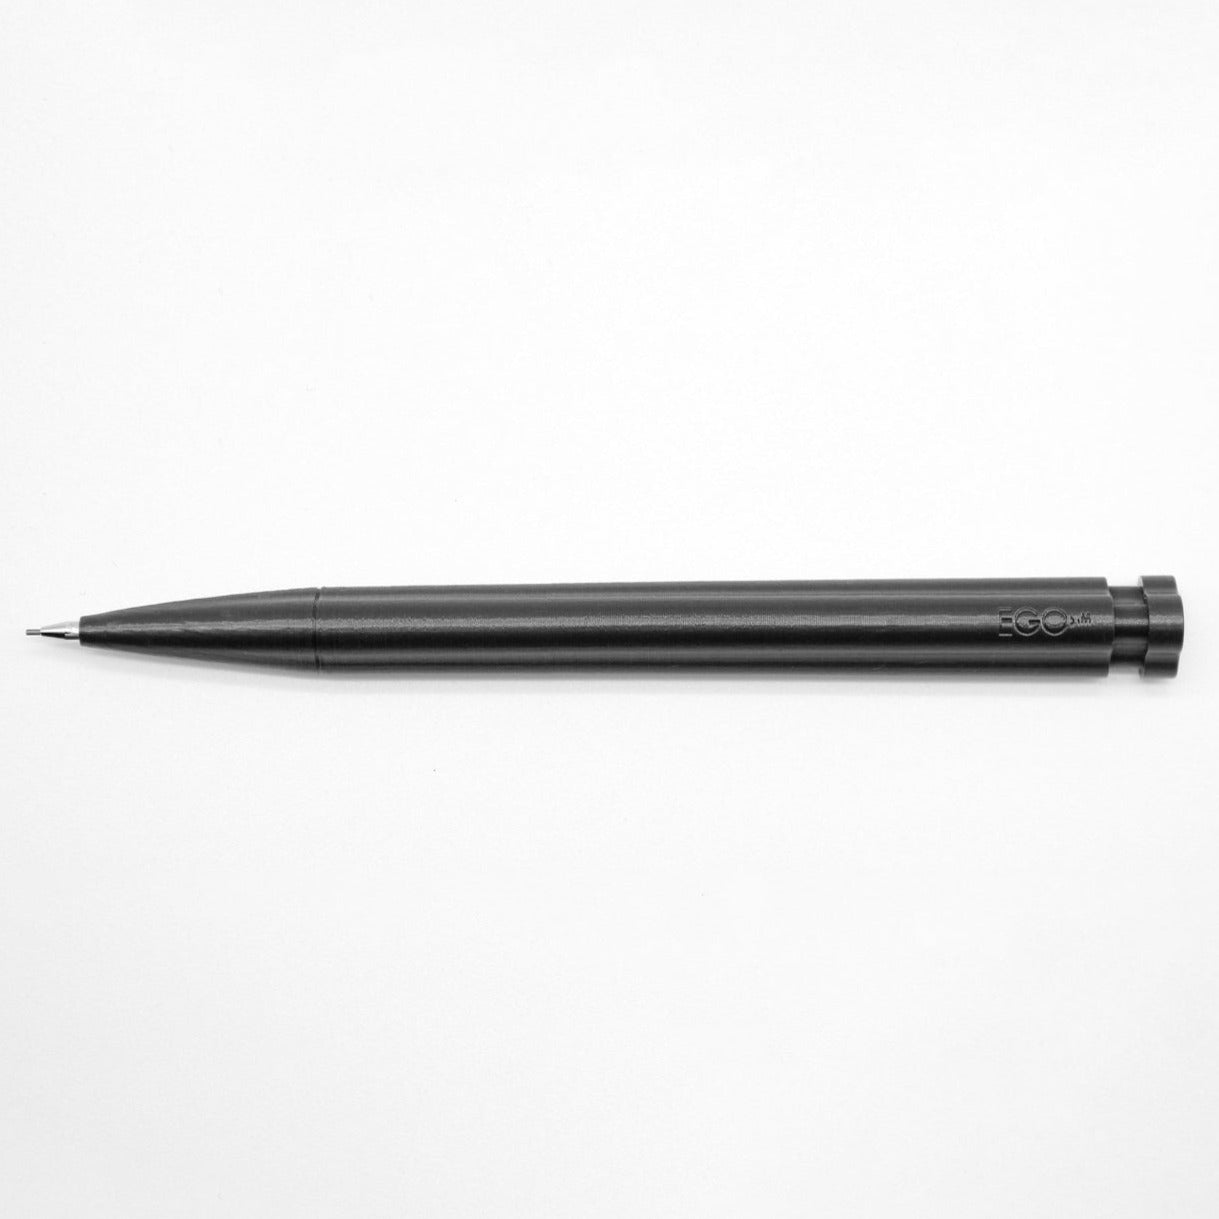 EGO.M - Achille Castiglione - CENTO3 - mechanical pencil